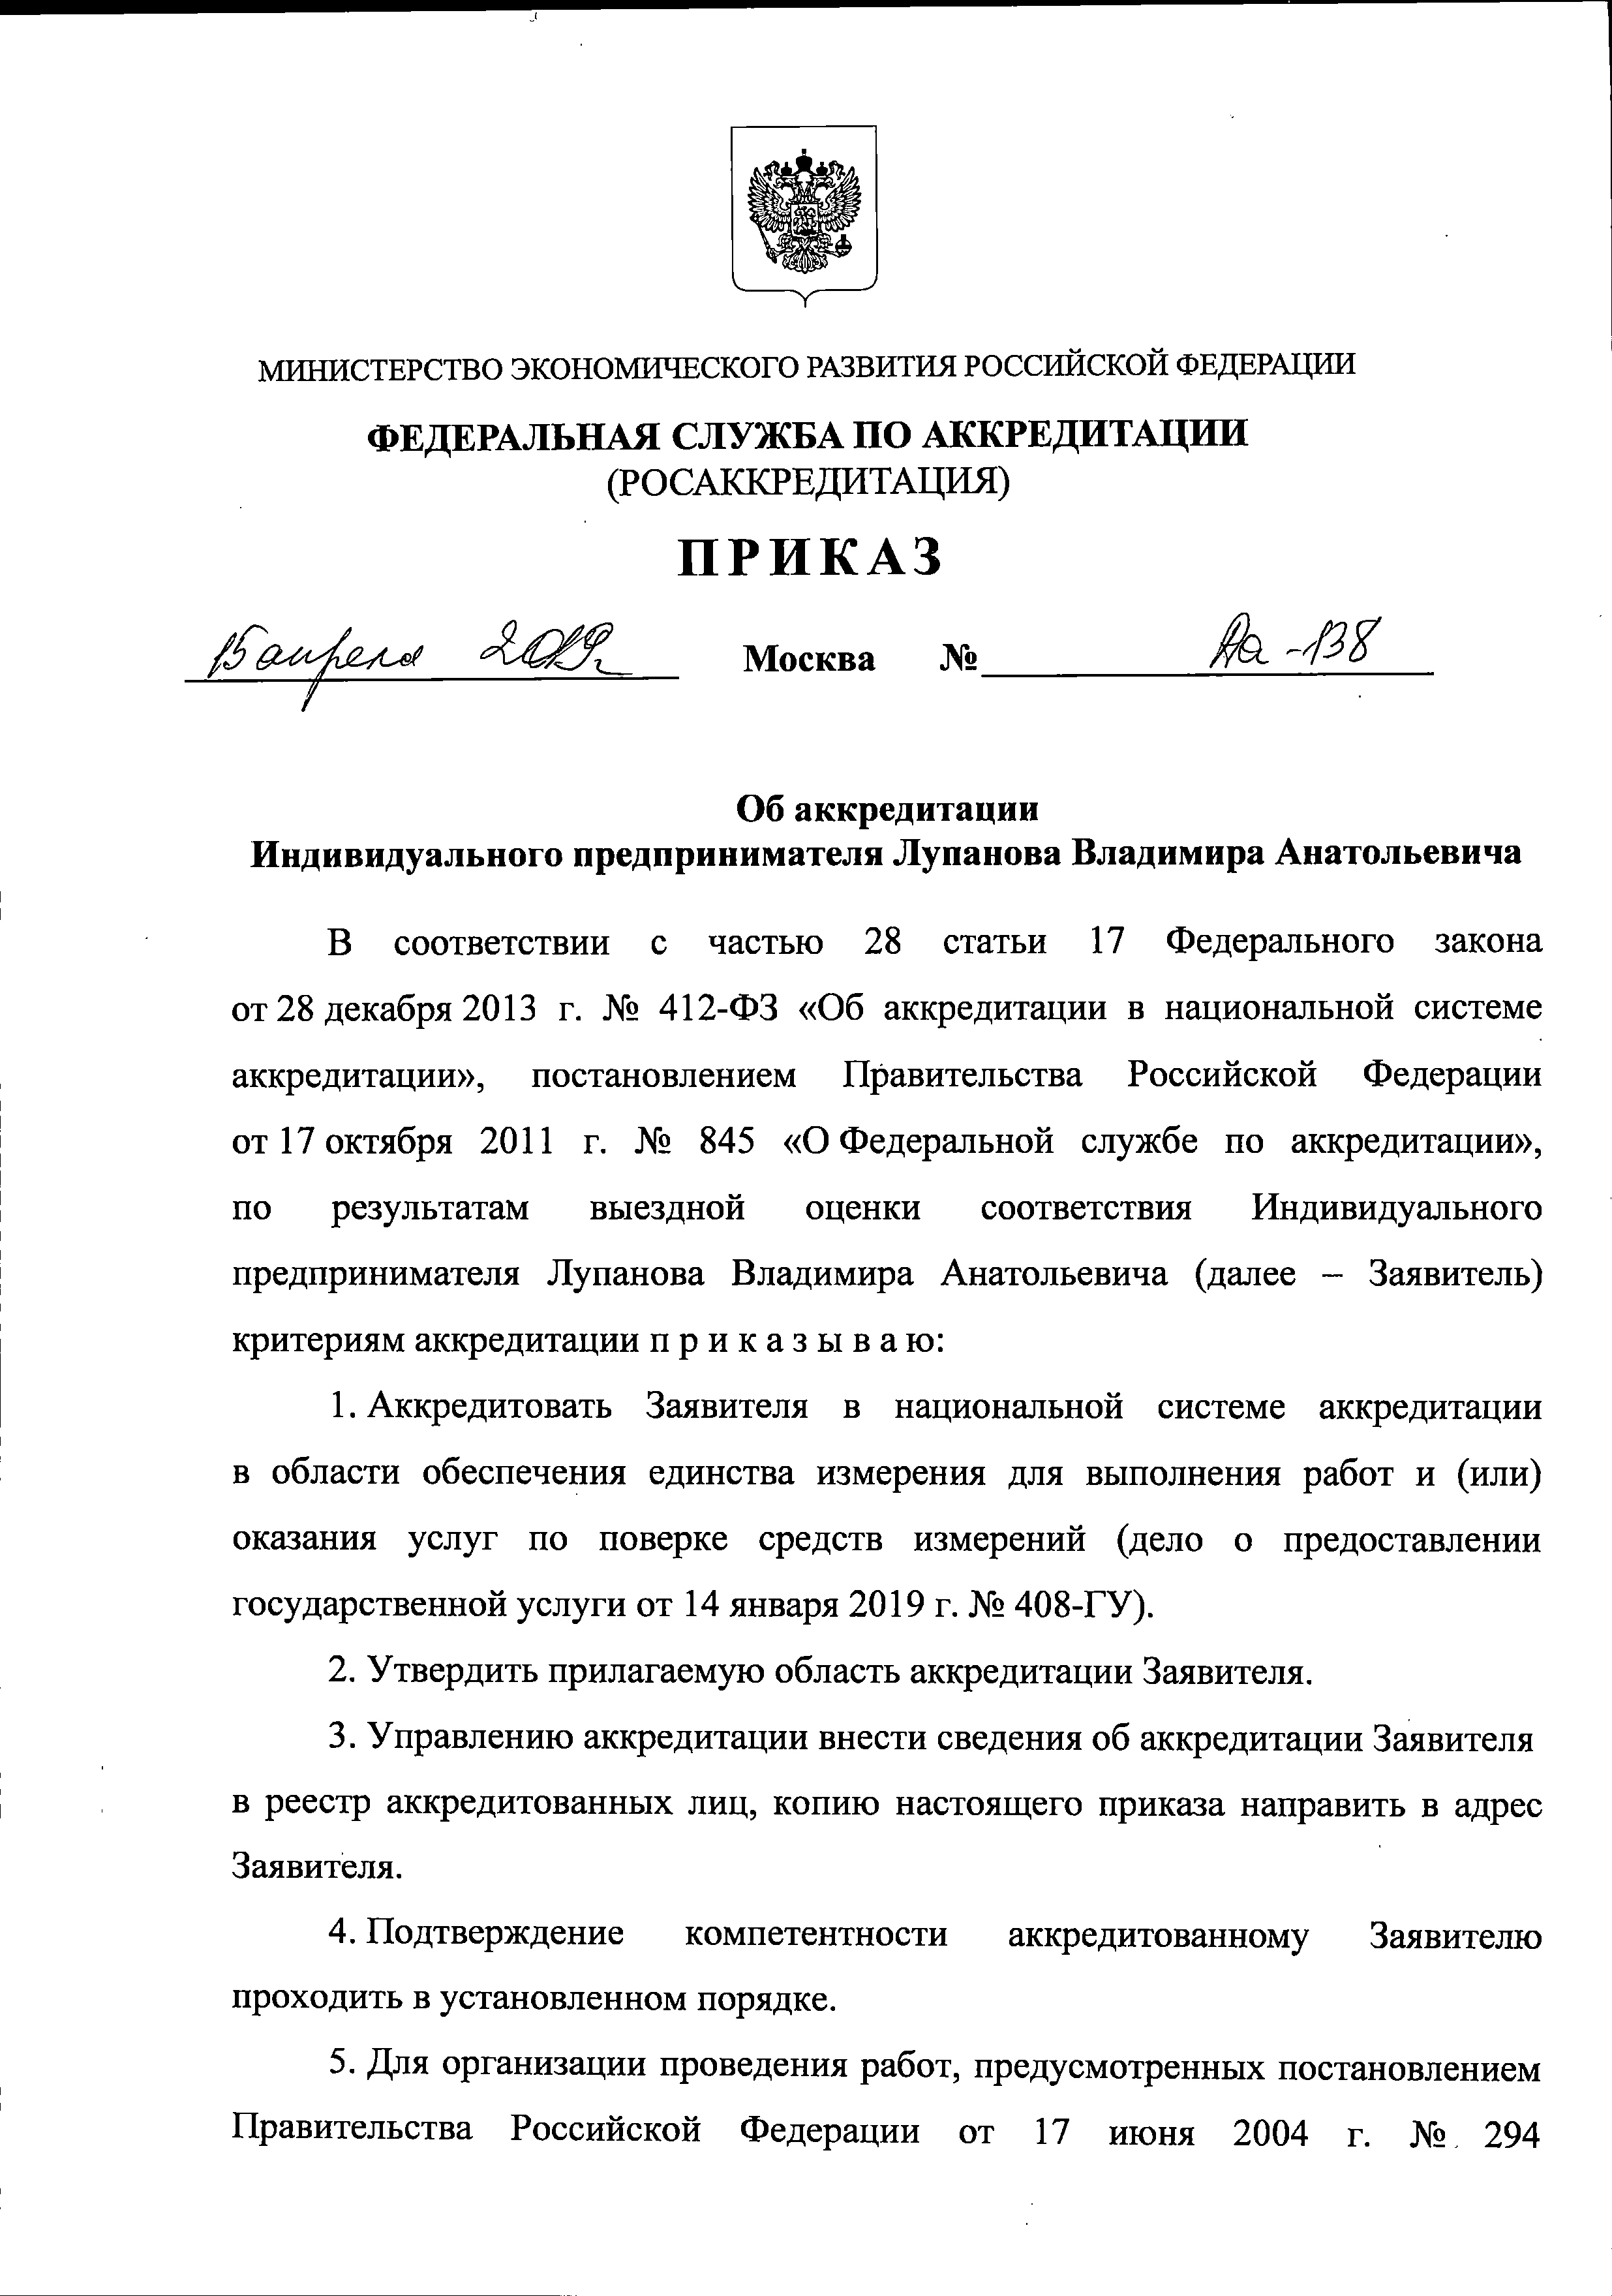 Сертификат Городские Коммунальные Системы (ГКС)